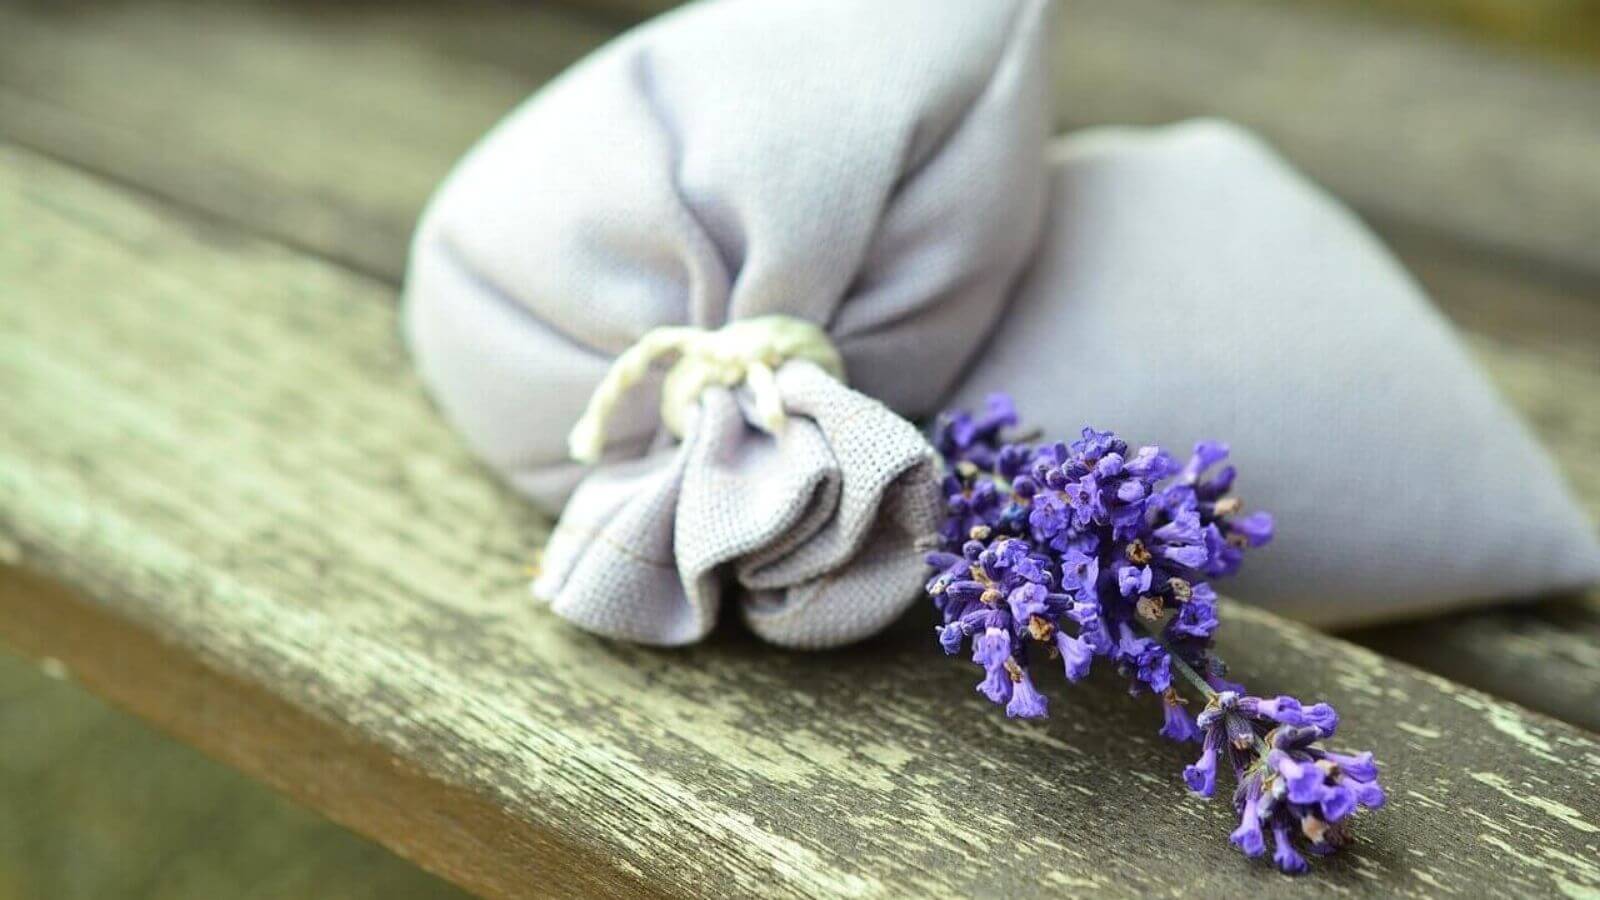 Aromaterapia - Sacchettini con fiori di lavanda